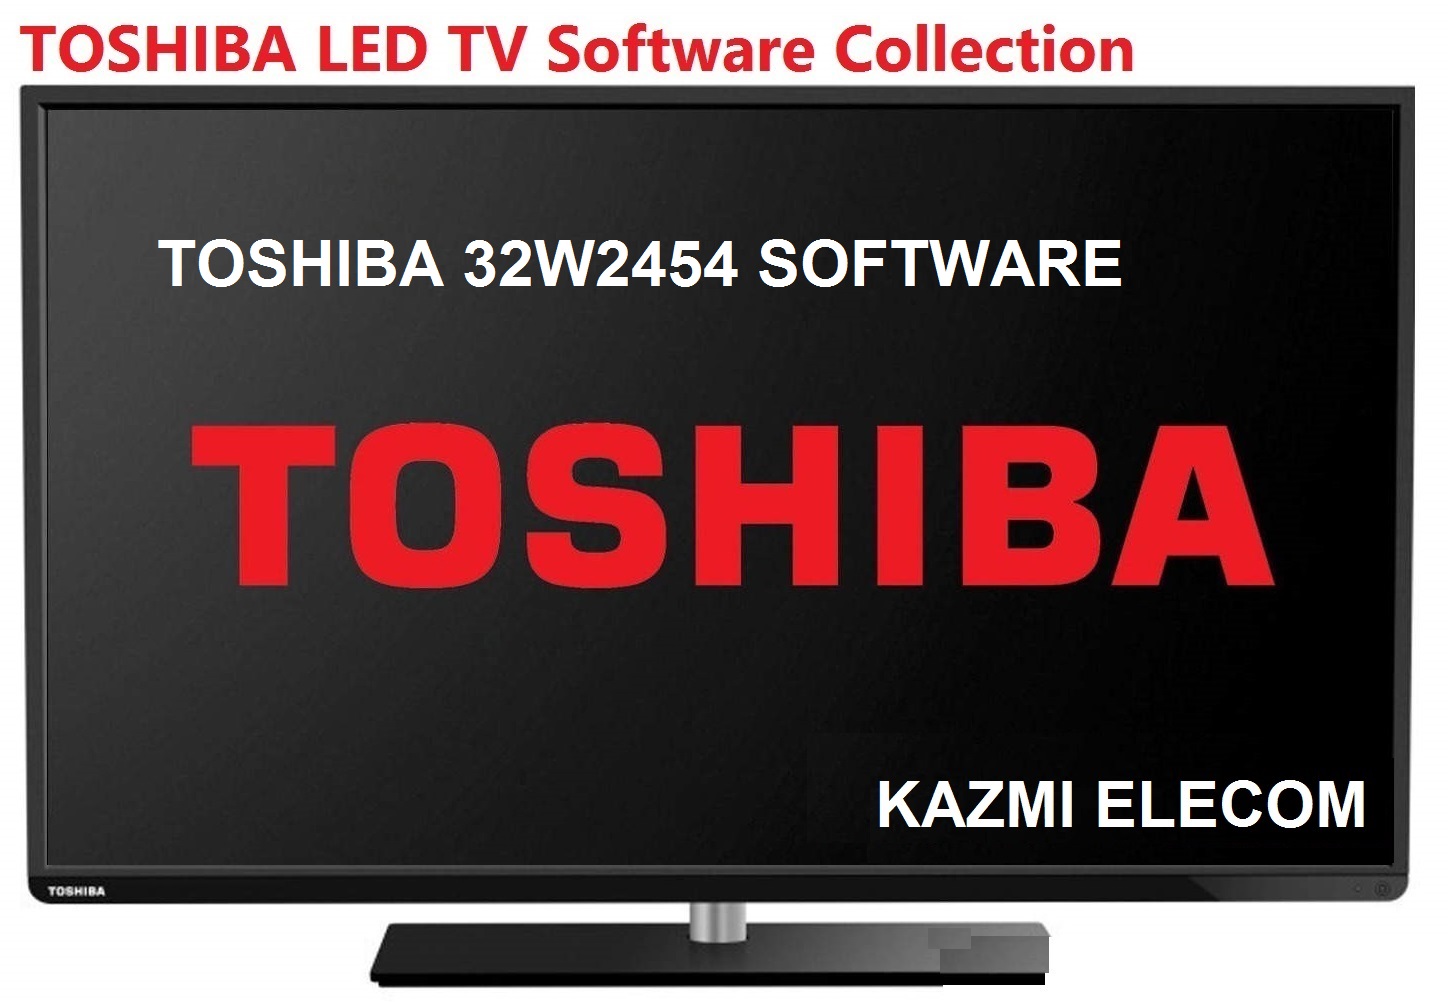 Toshiba 32W2454